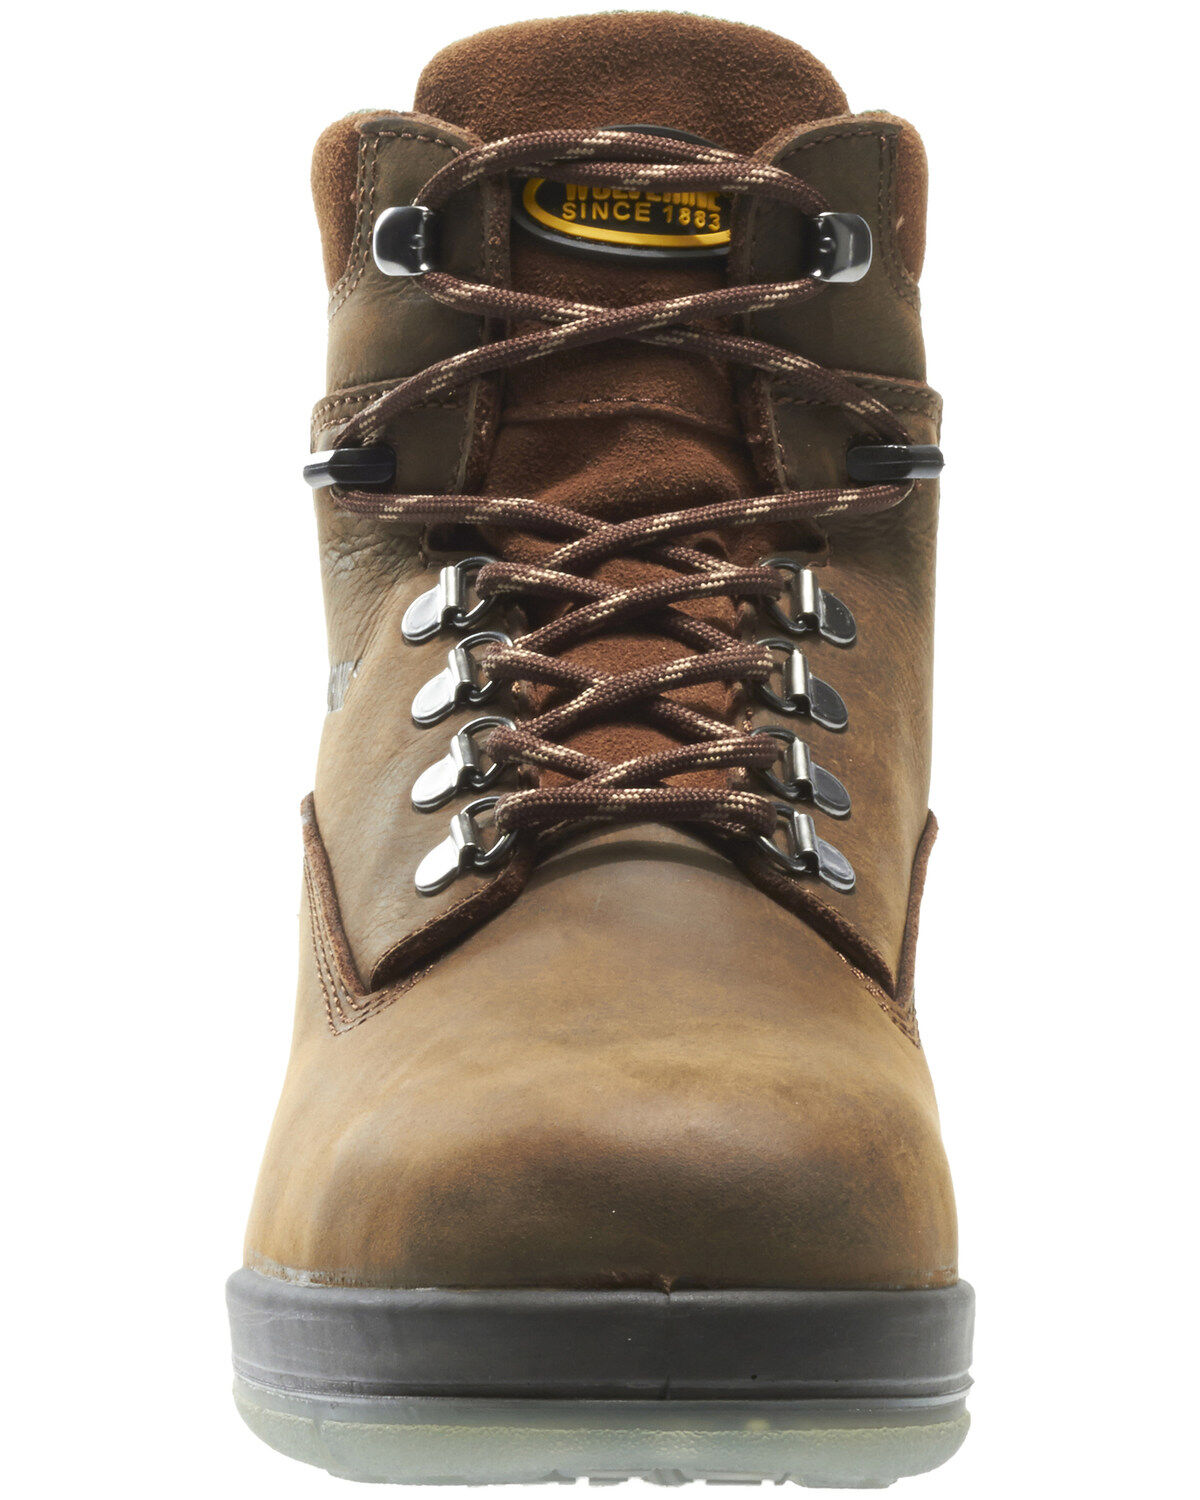 wolverine boots durashocks steel toe